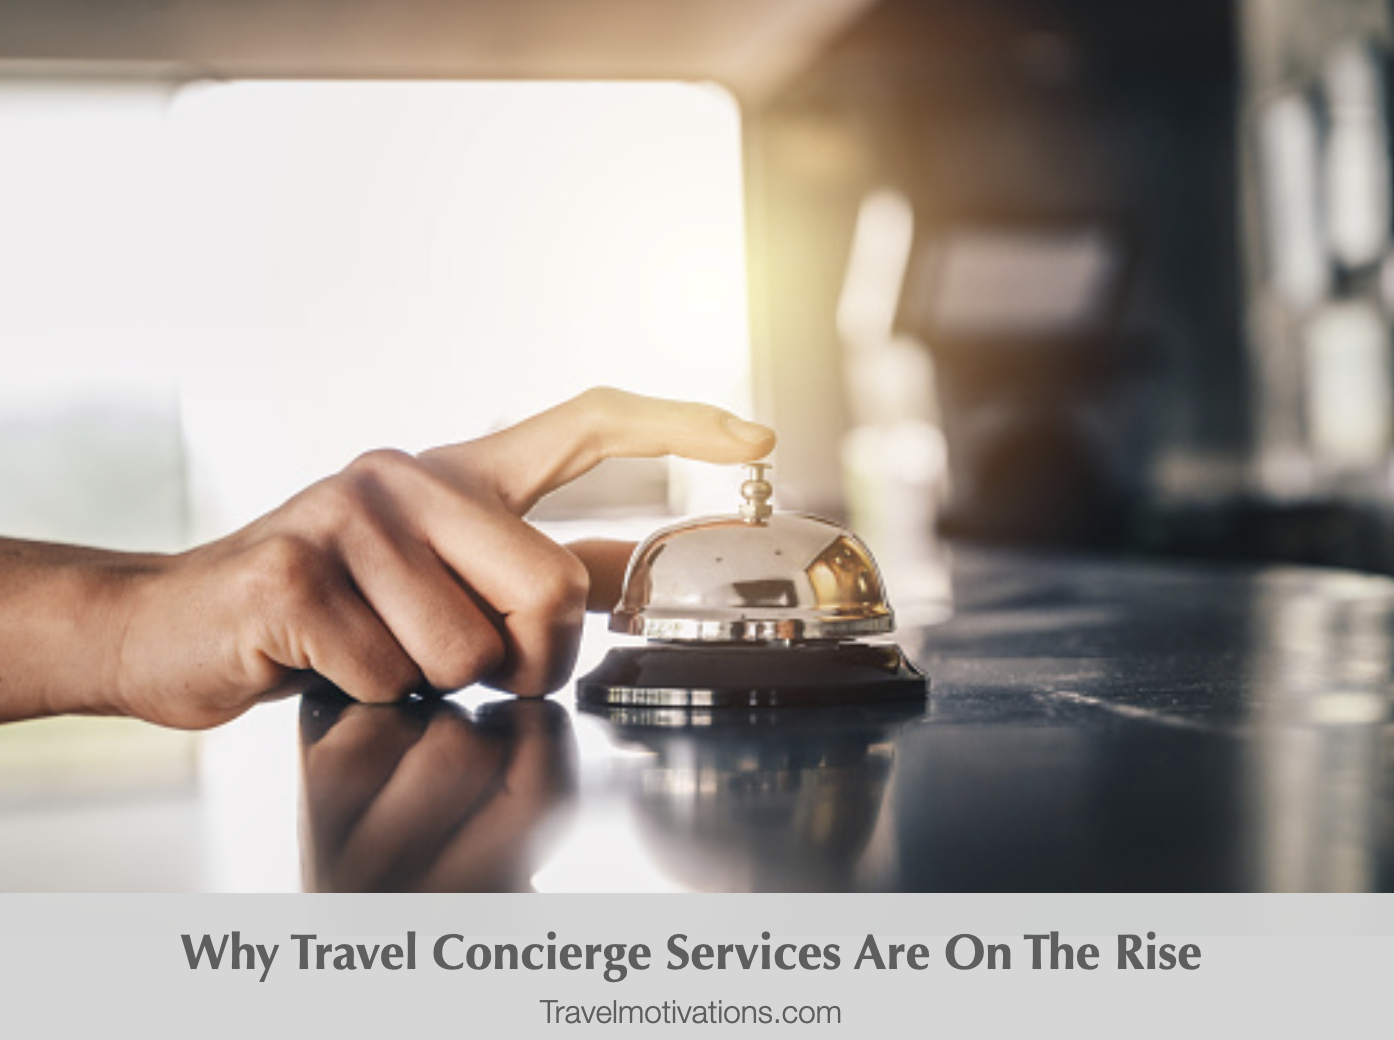 travel concierge service means